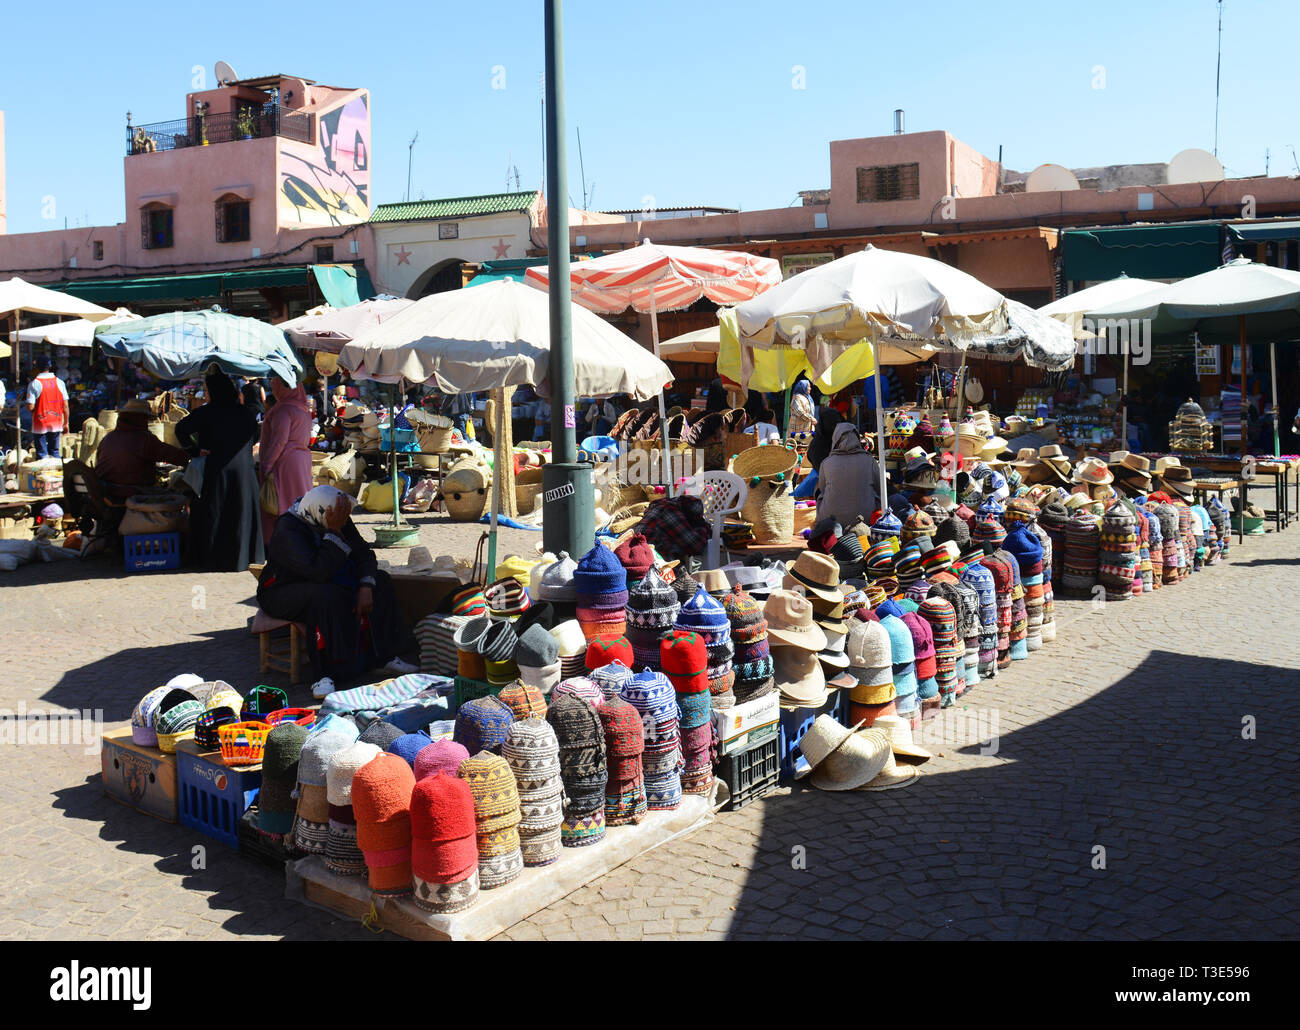 Marocchino tradizionale di cappelli e altri souvenir venduti all'Djma el Fna sq. in Marrakech, Marocco. Foto Stock